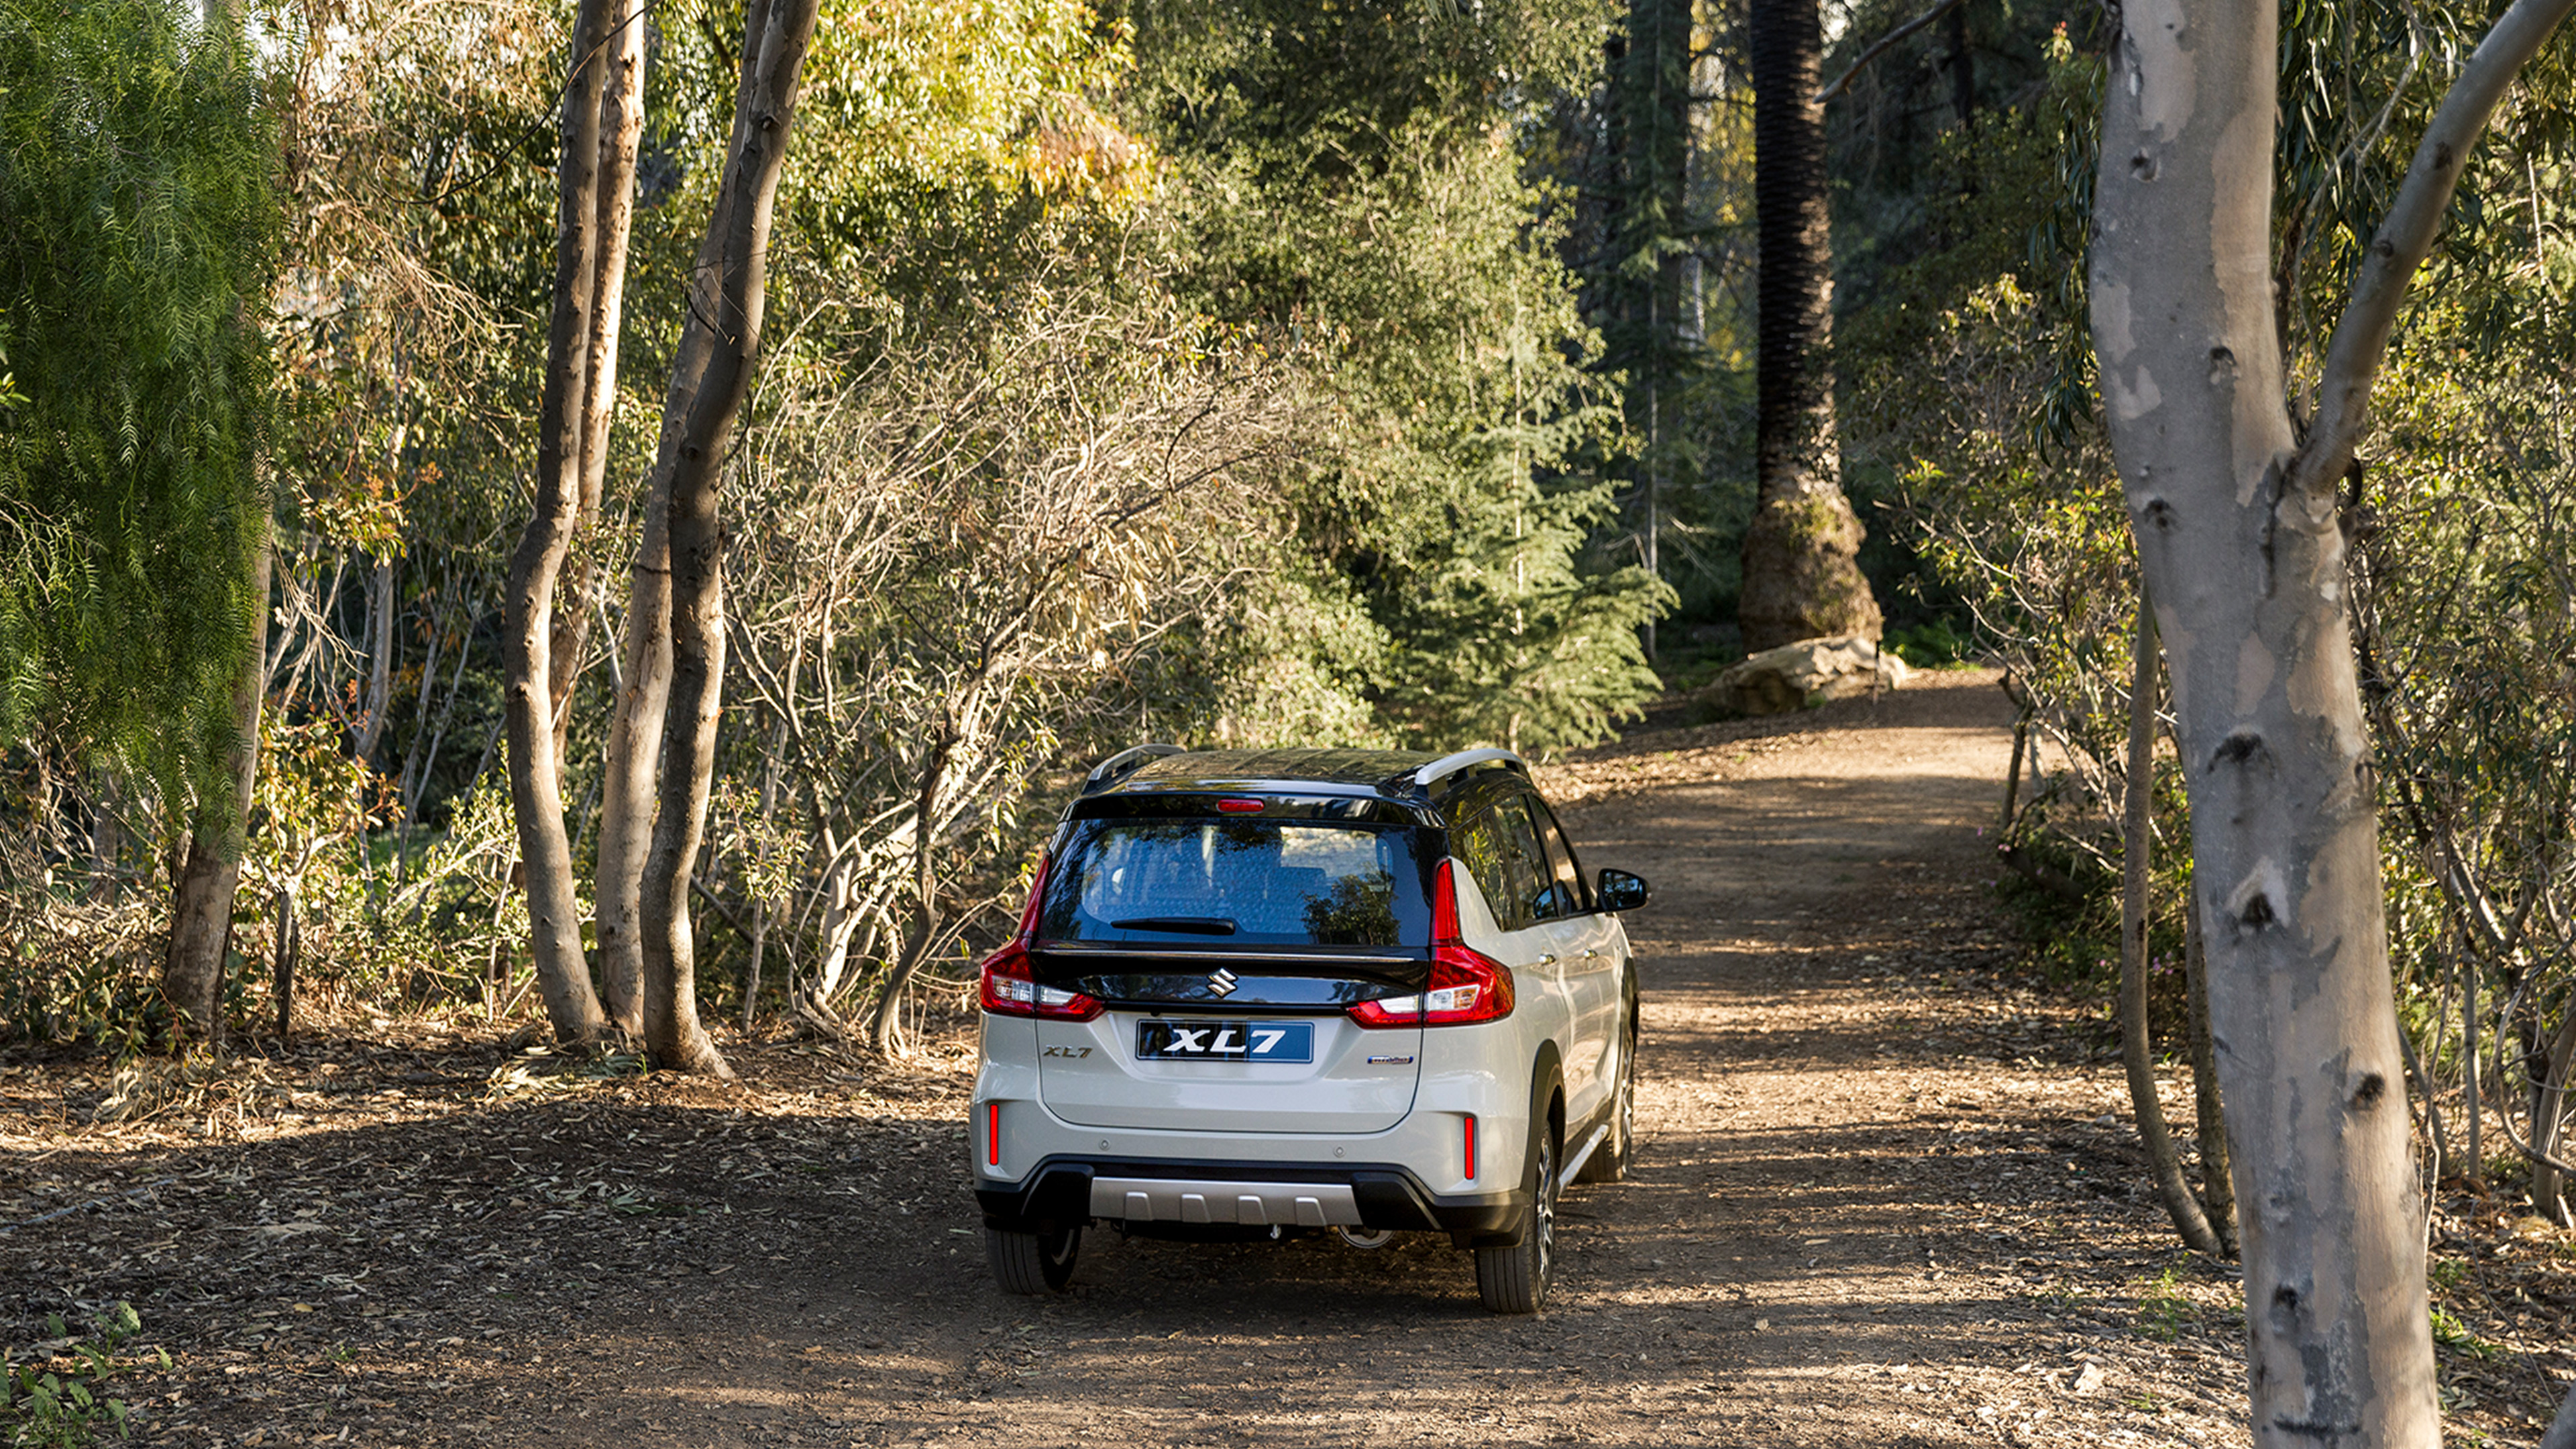 Suzuki-XL7-inside-forest-rear-view